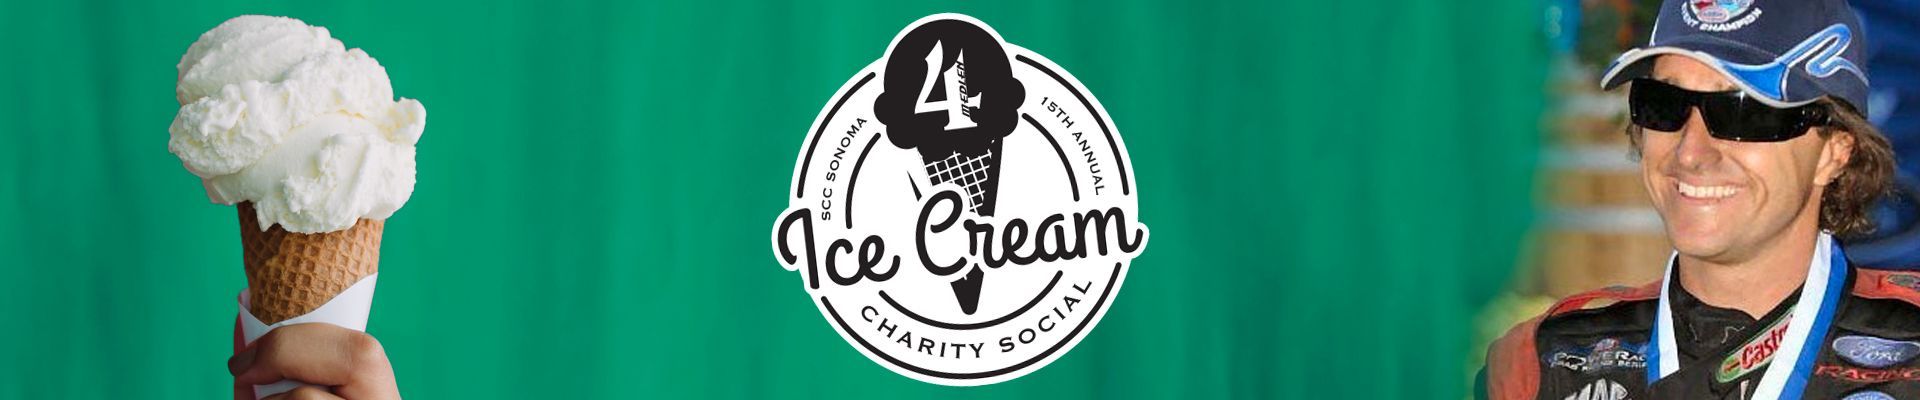 Eric Medlen Virtual Ice Cream Social Registration Header